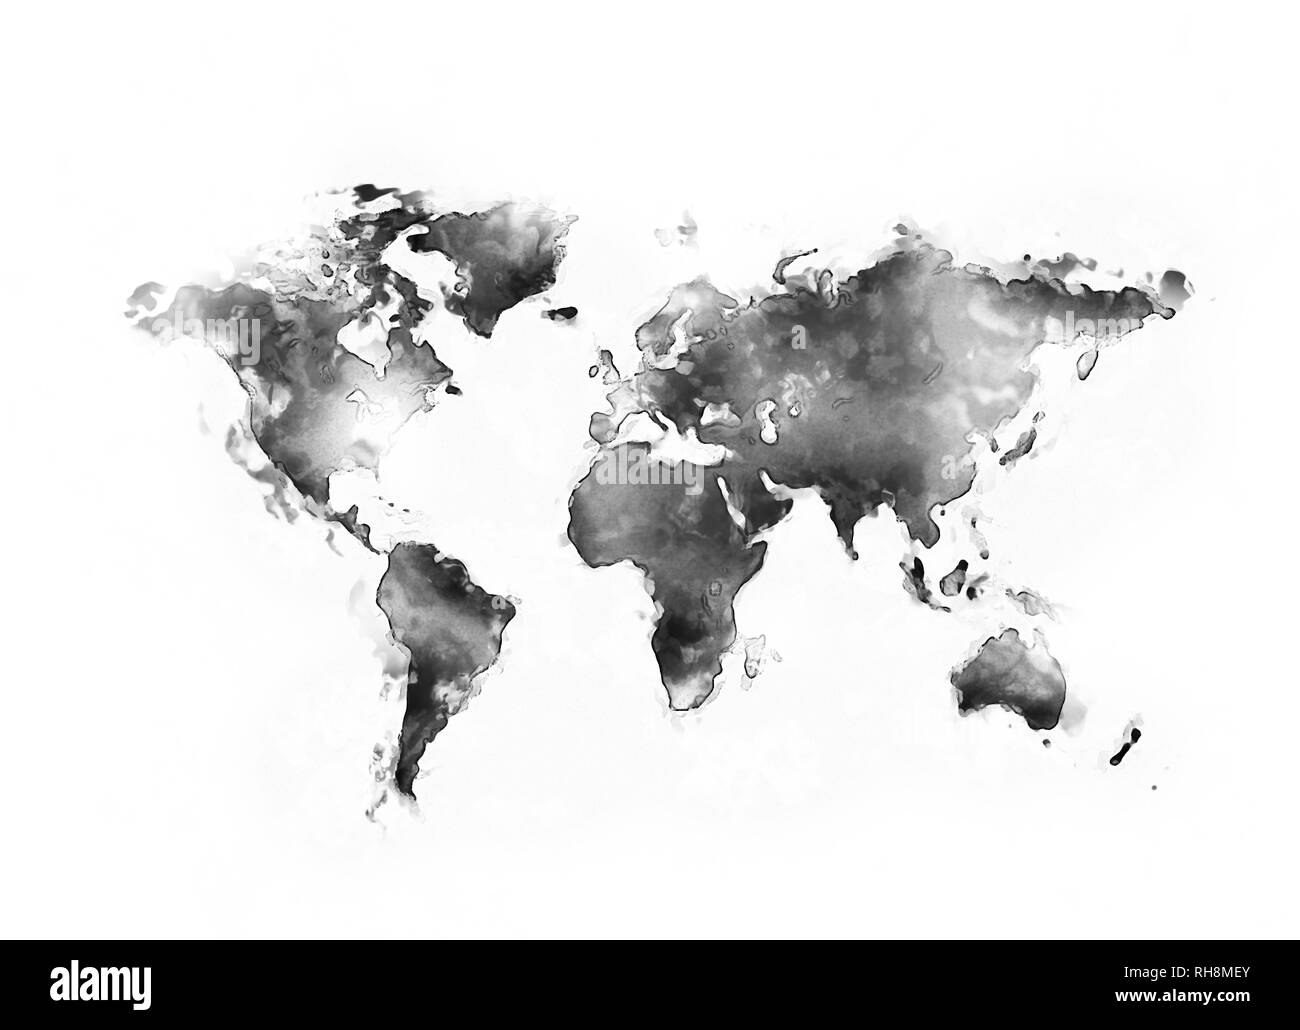 World map black ink isolated on white background Stock Photo